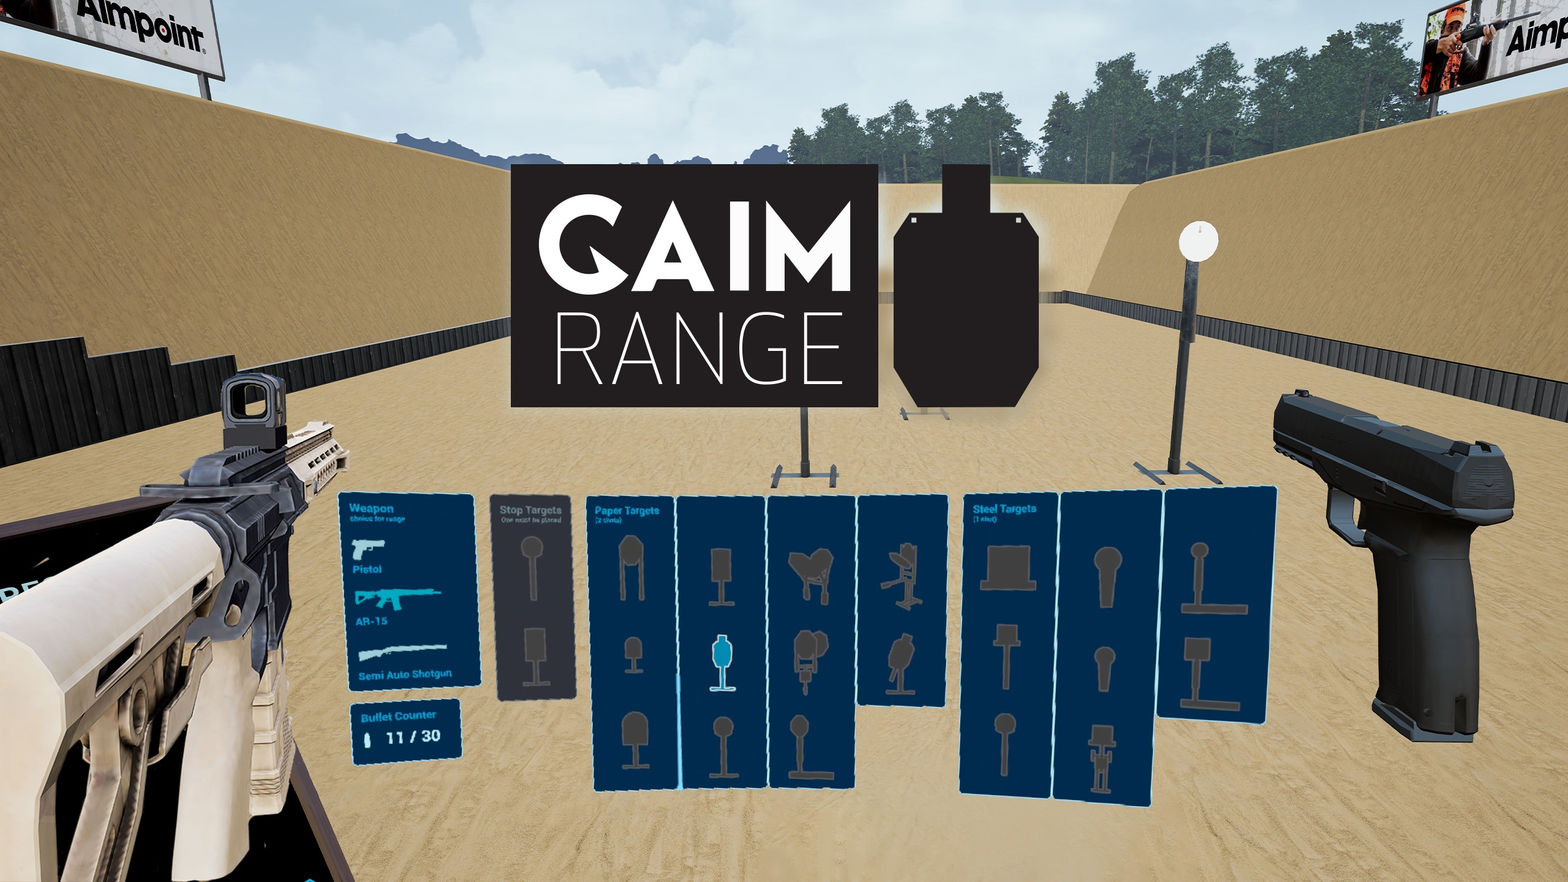 GAIM Range